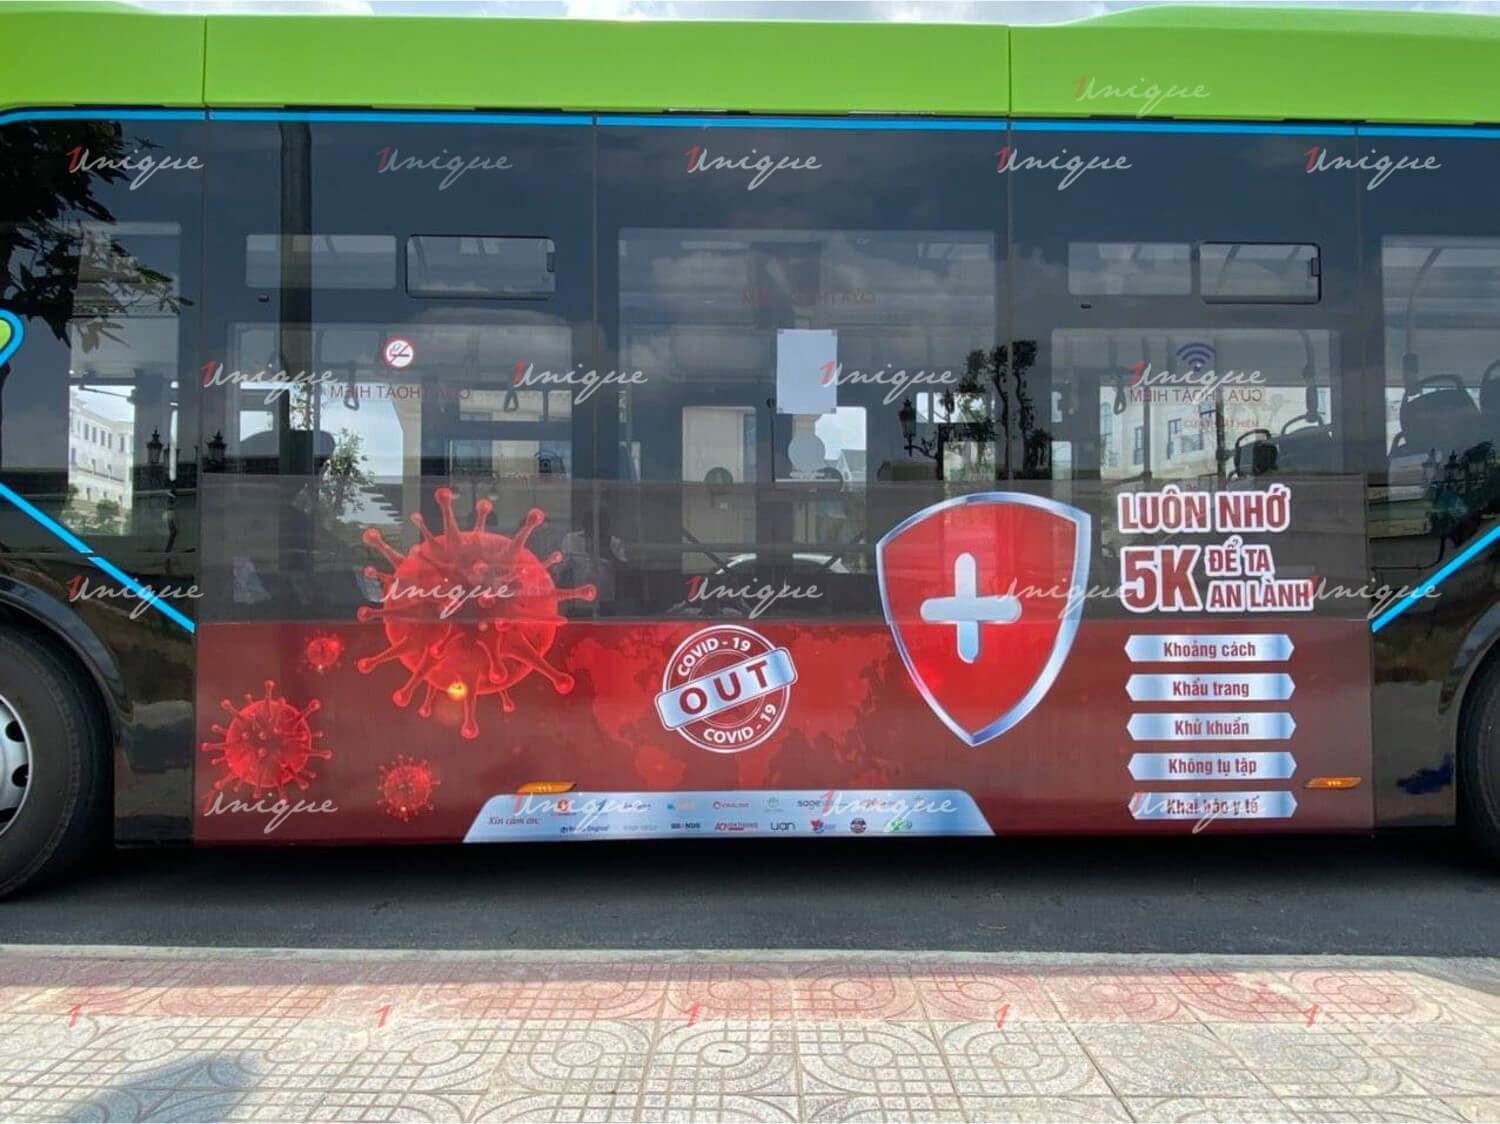 quảng cáo trên xe buýt điện Vinbus chống dịch covid-19